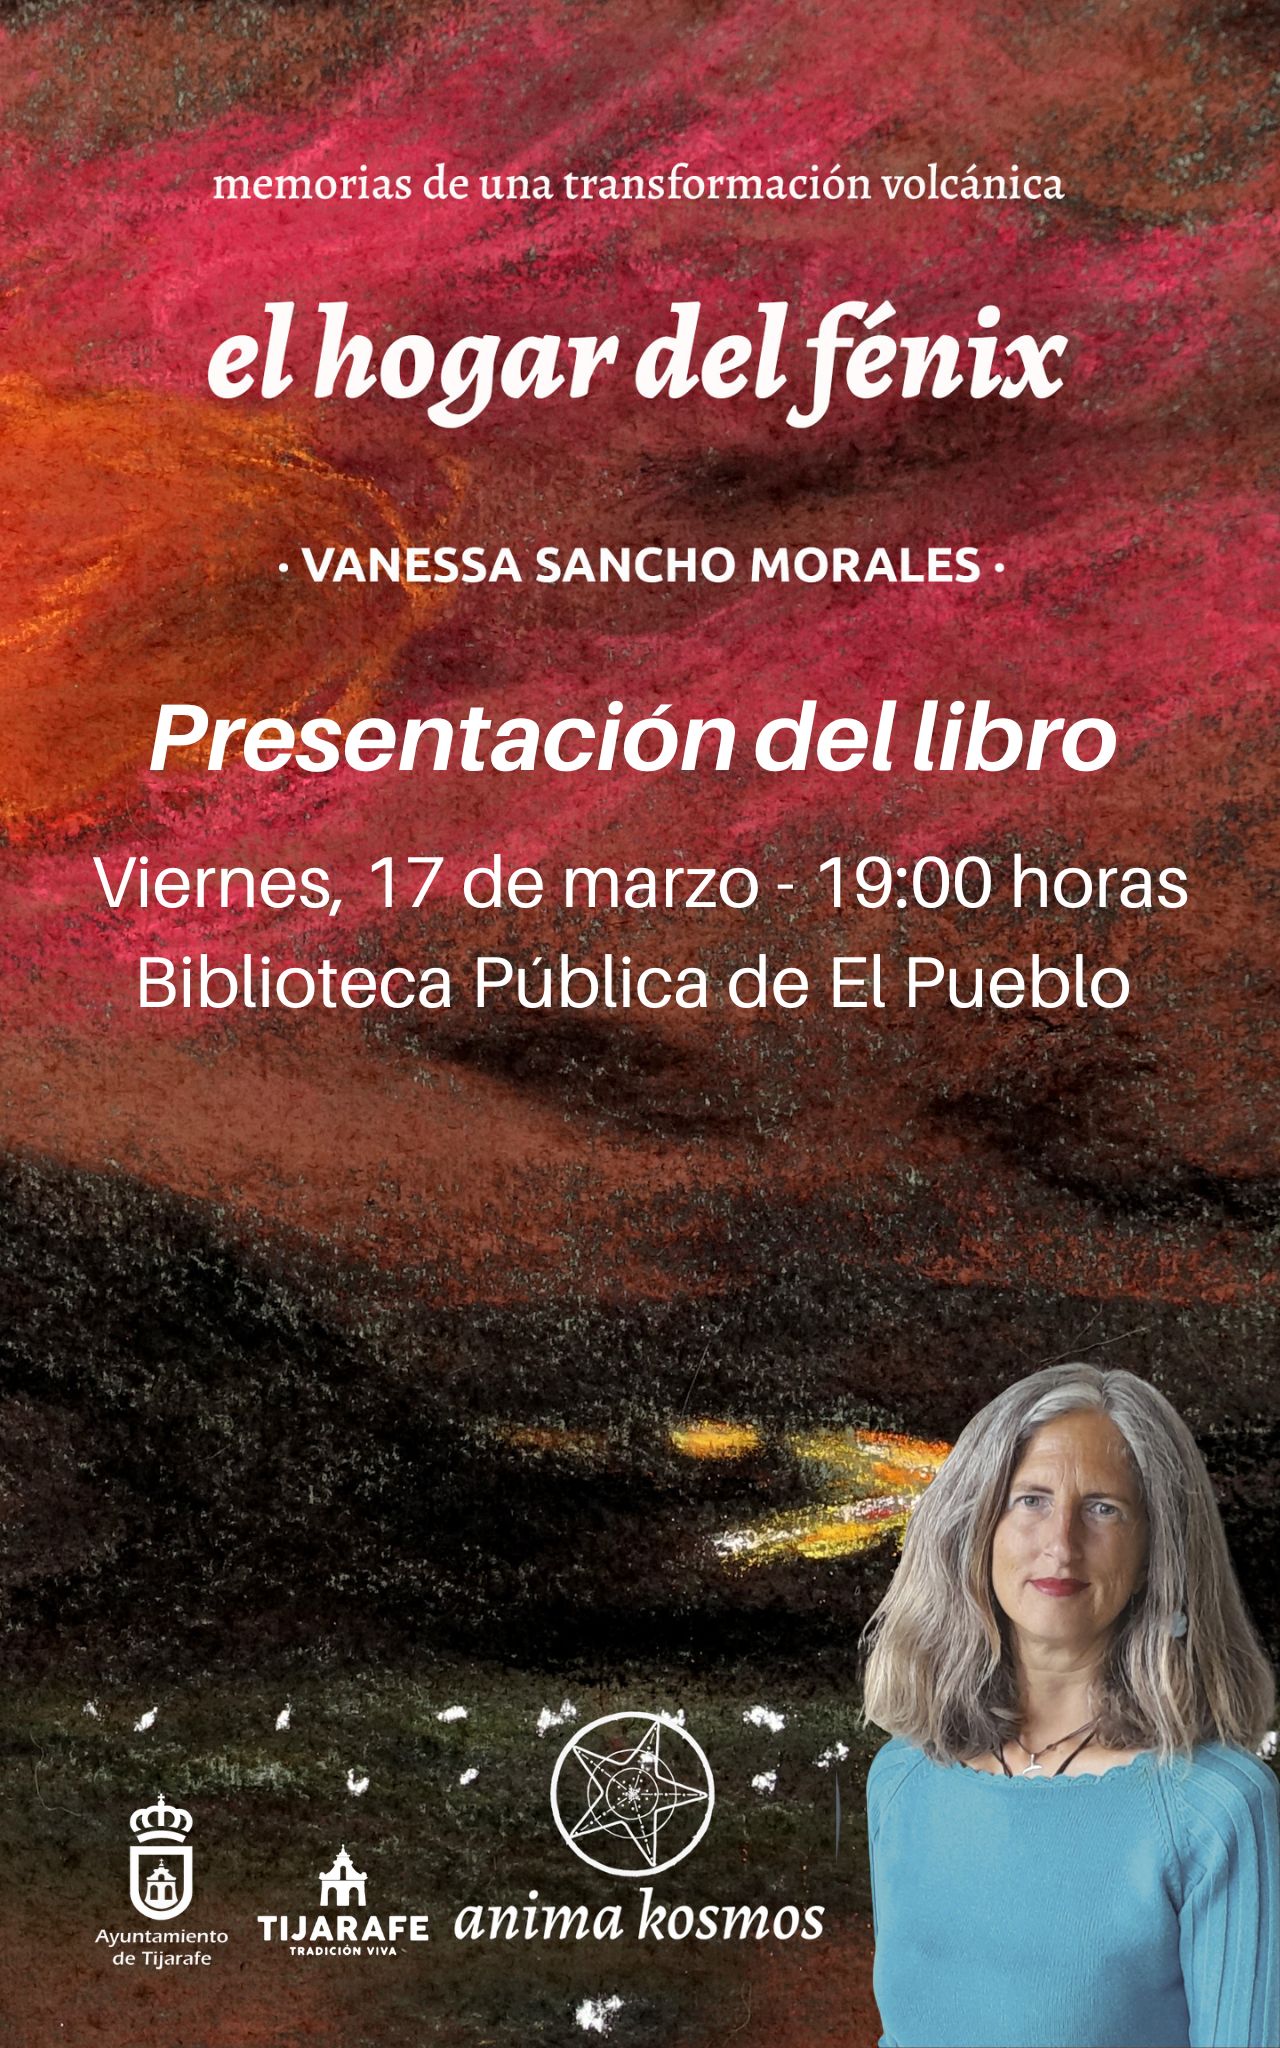 Presentación del libro “El hogar del fénix” de Vanessa Sancho Morales